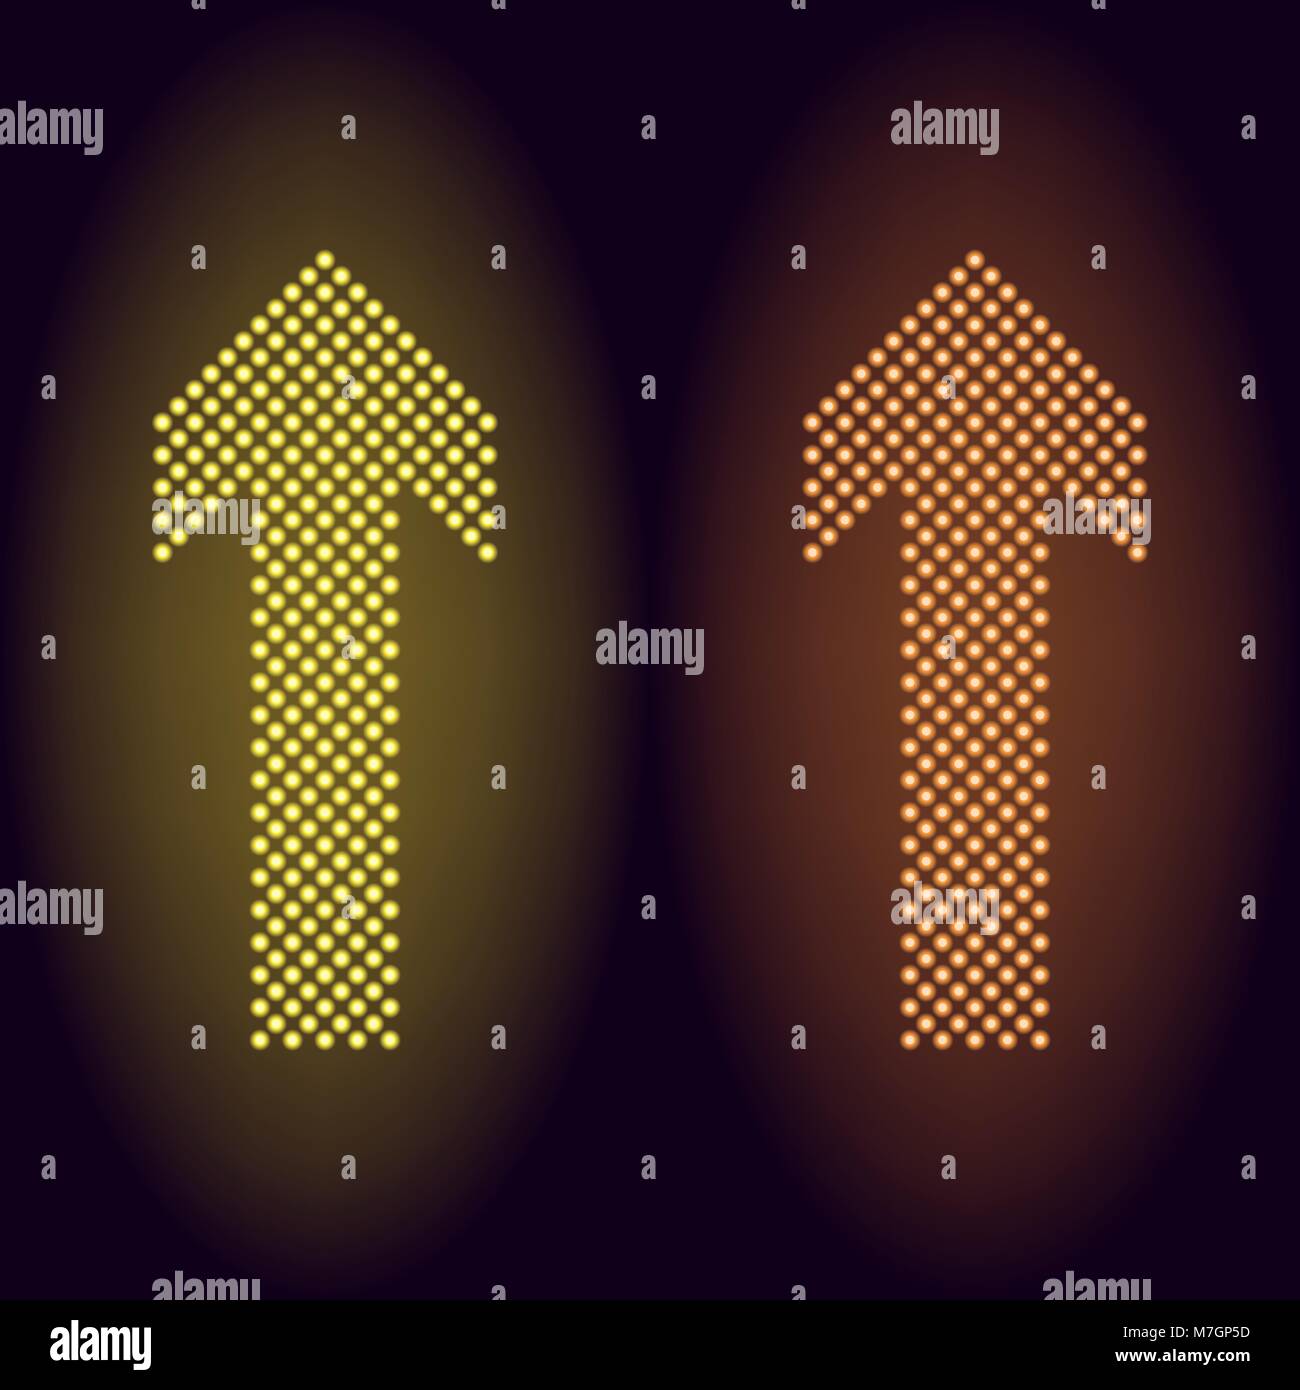 Amarillo y naranja neón dot flecha. Ilustración vectorial de larga flecha de neón que consta de muchos puntos con retroiluminación del fondo oscuro Ilustración del Vector